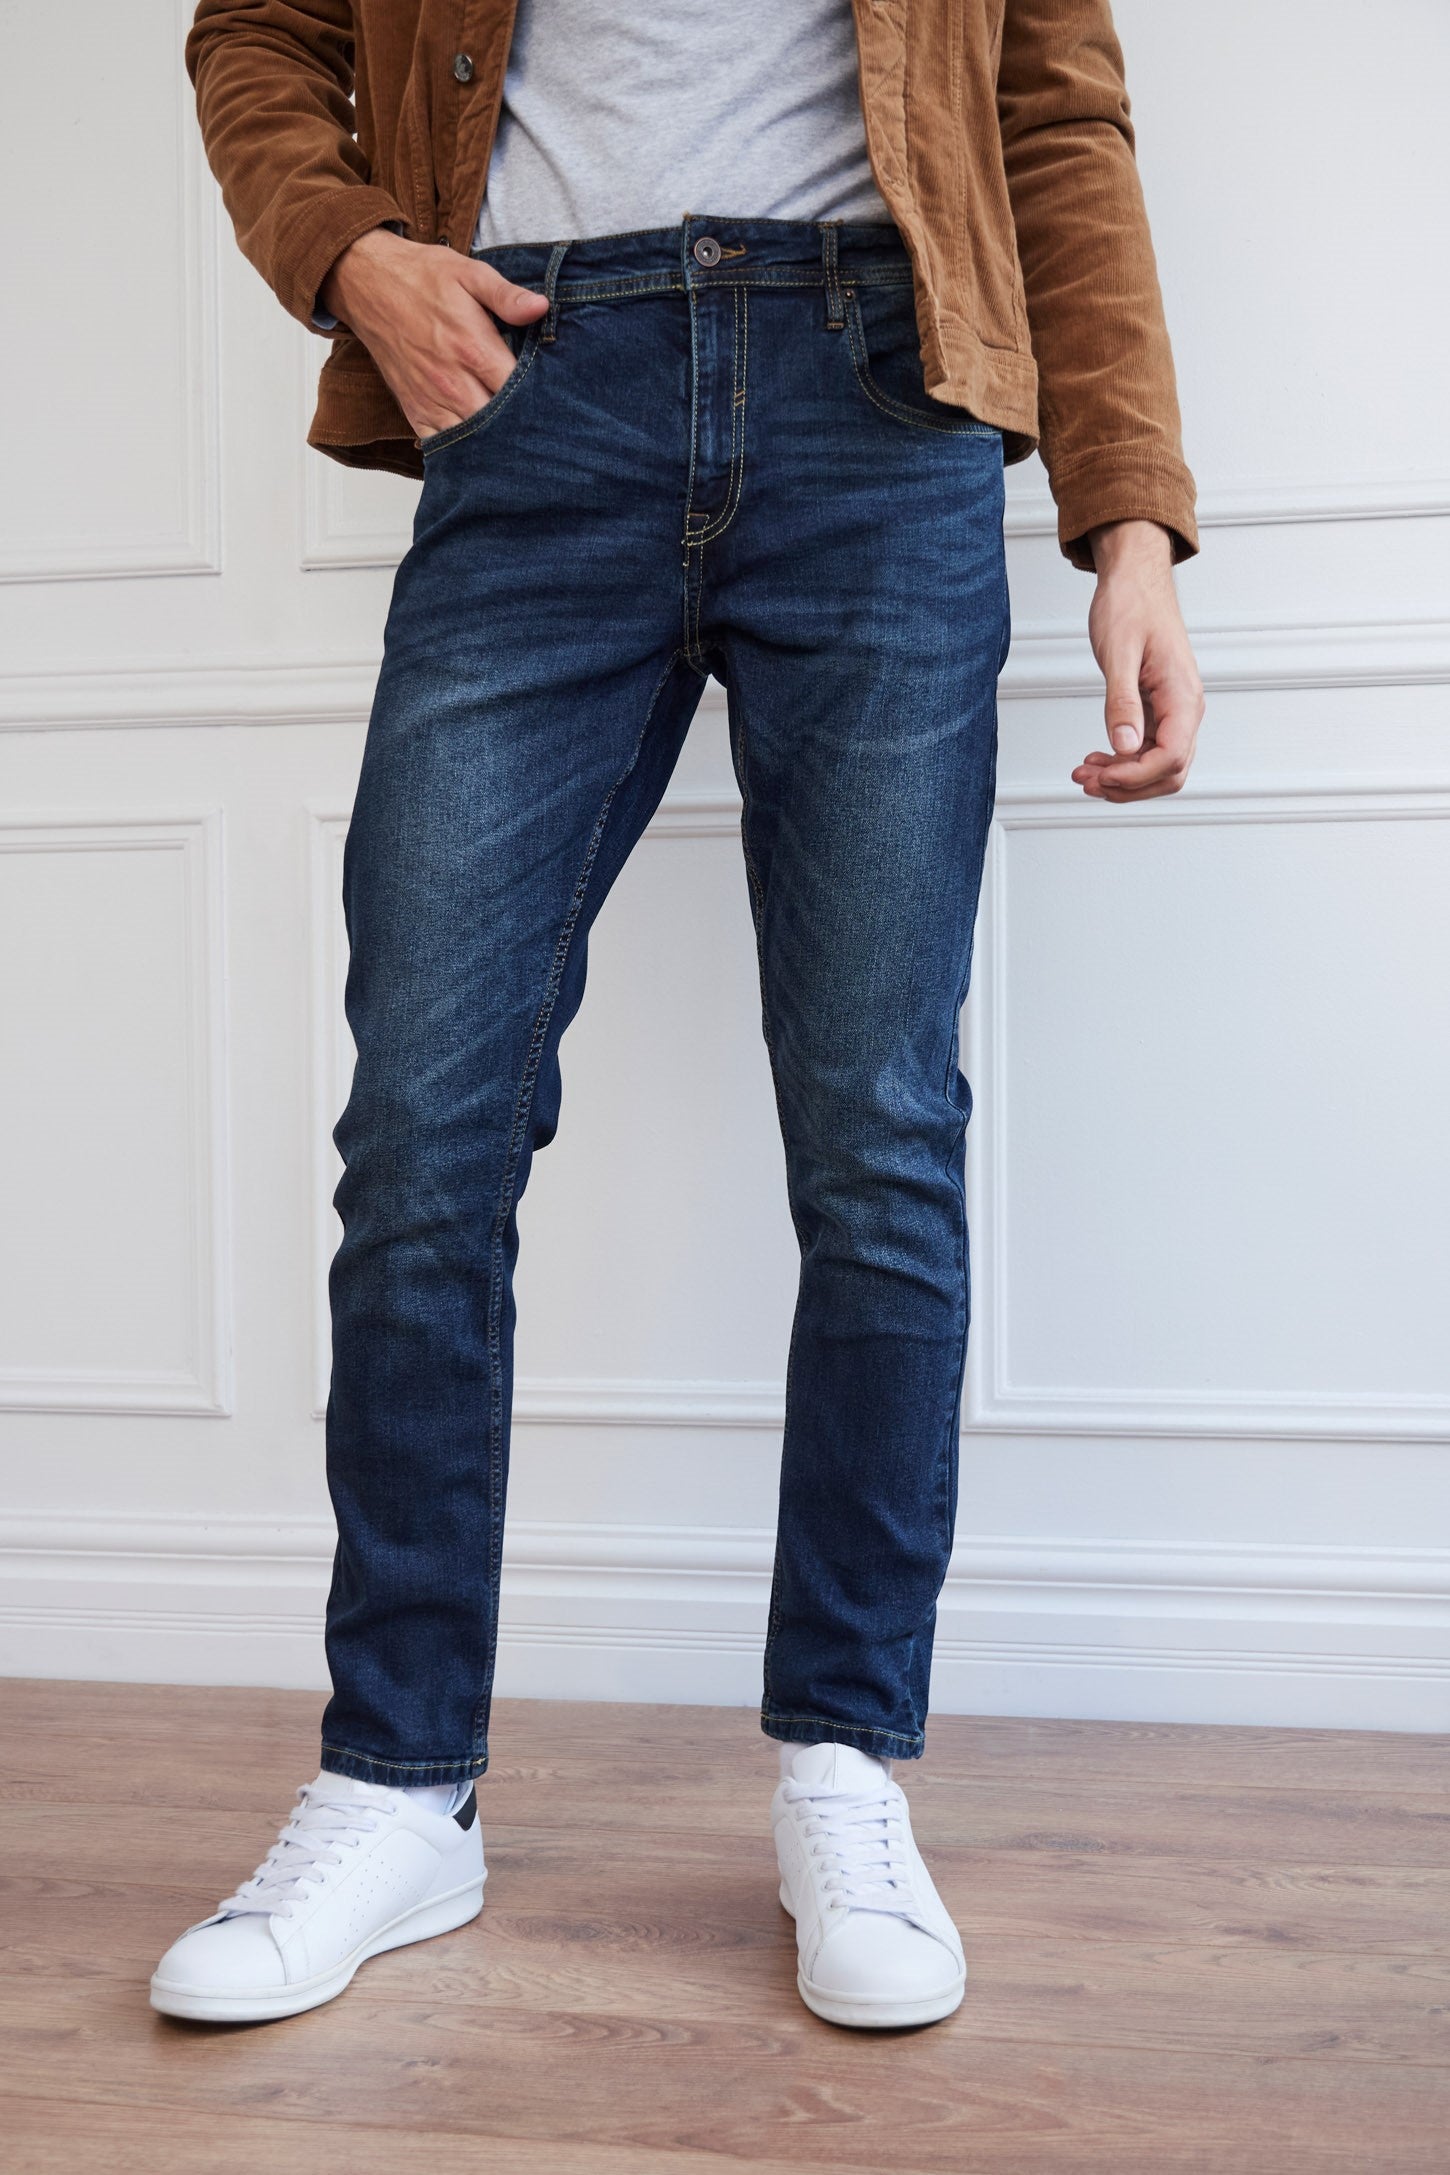 Jeans bleu foncé coupe étroite - Homme && MARIN